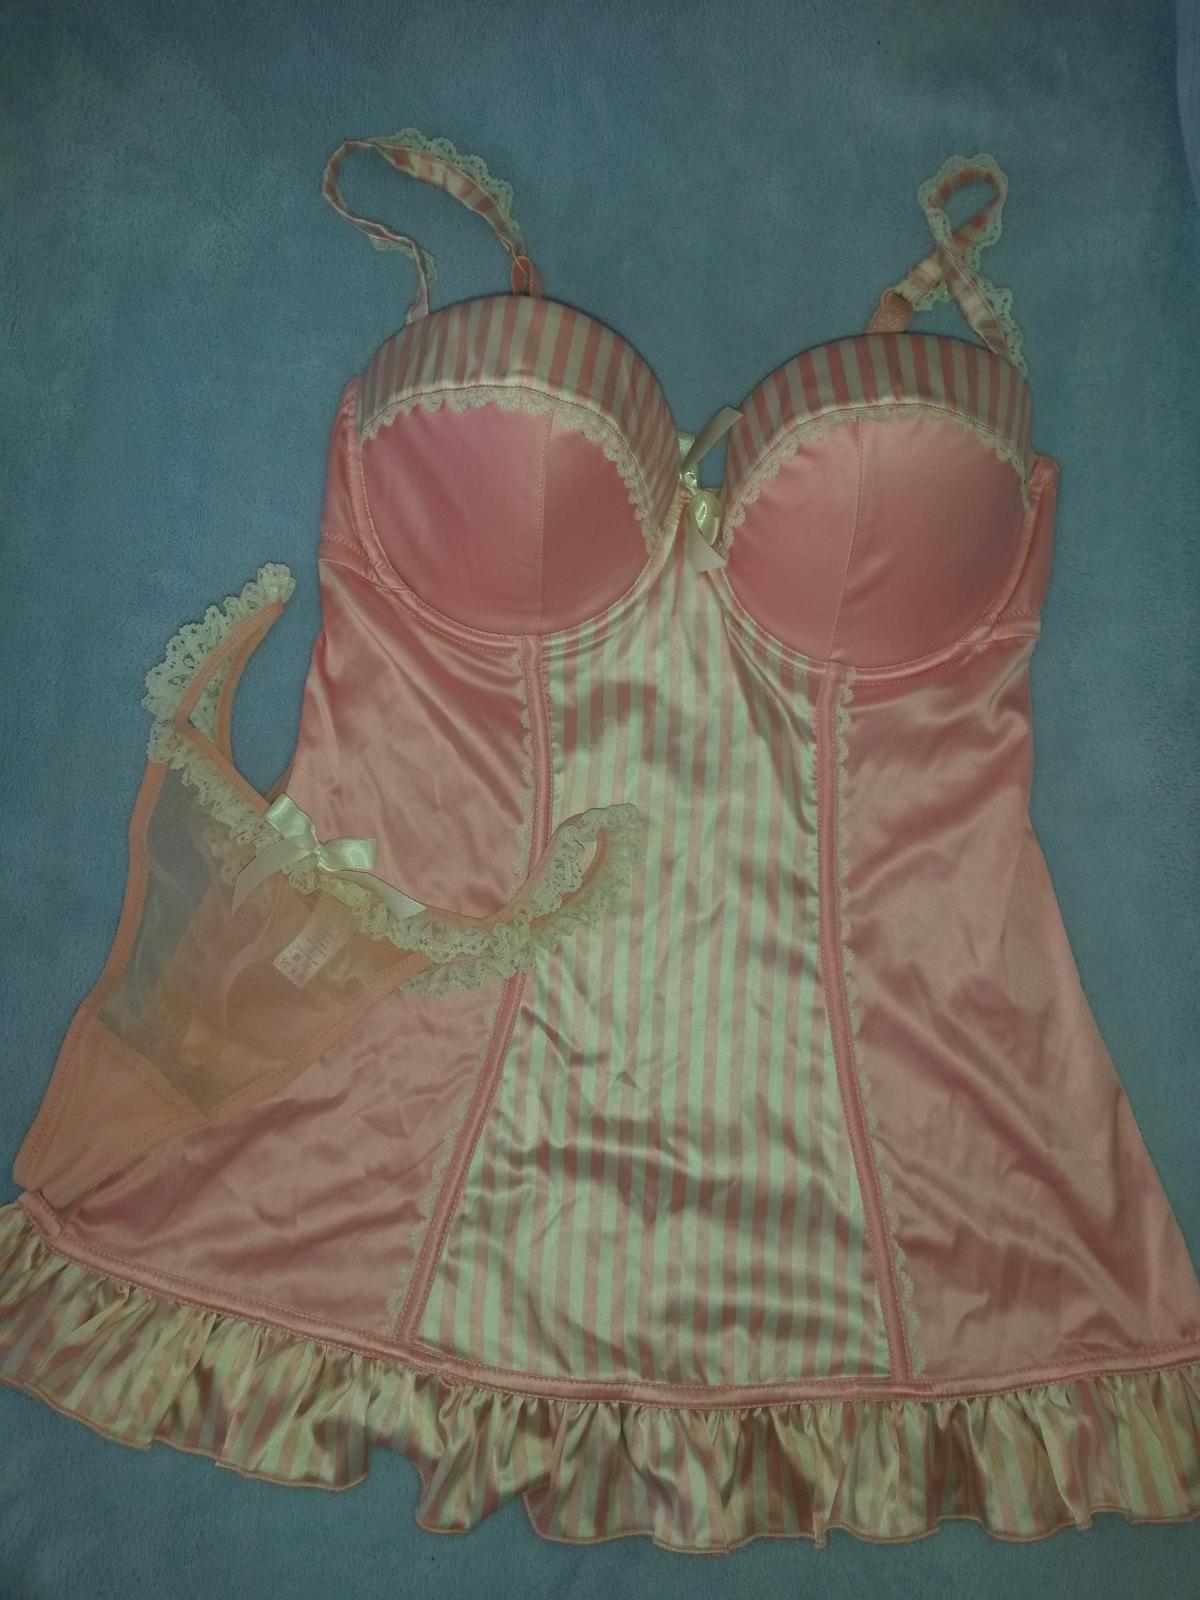 Růžové spodní prádlo - body a tanga, la Senza,nové - Obrázek č. 1